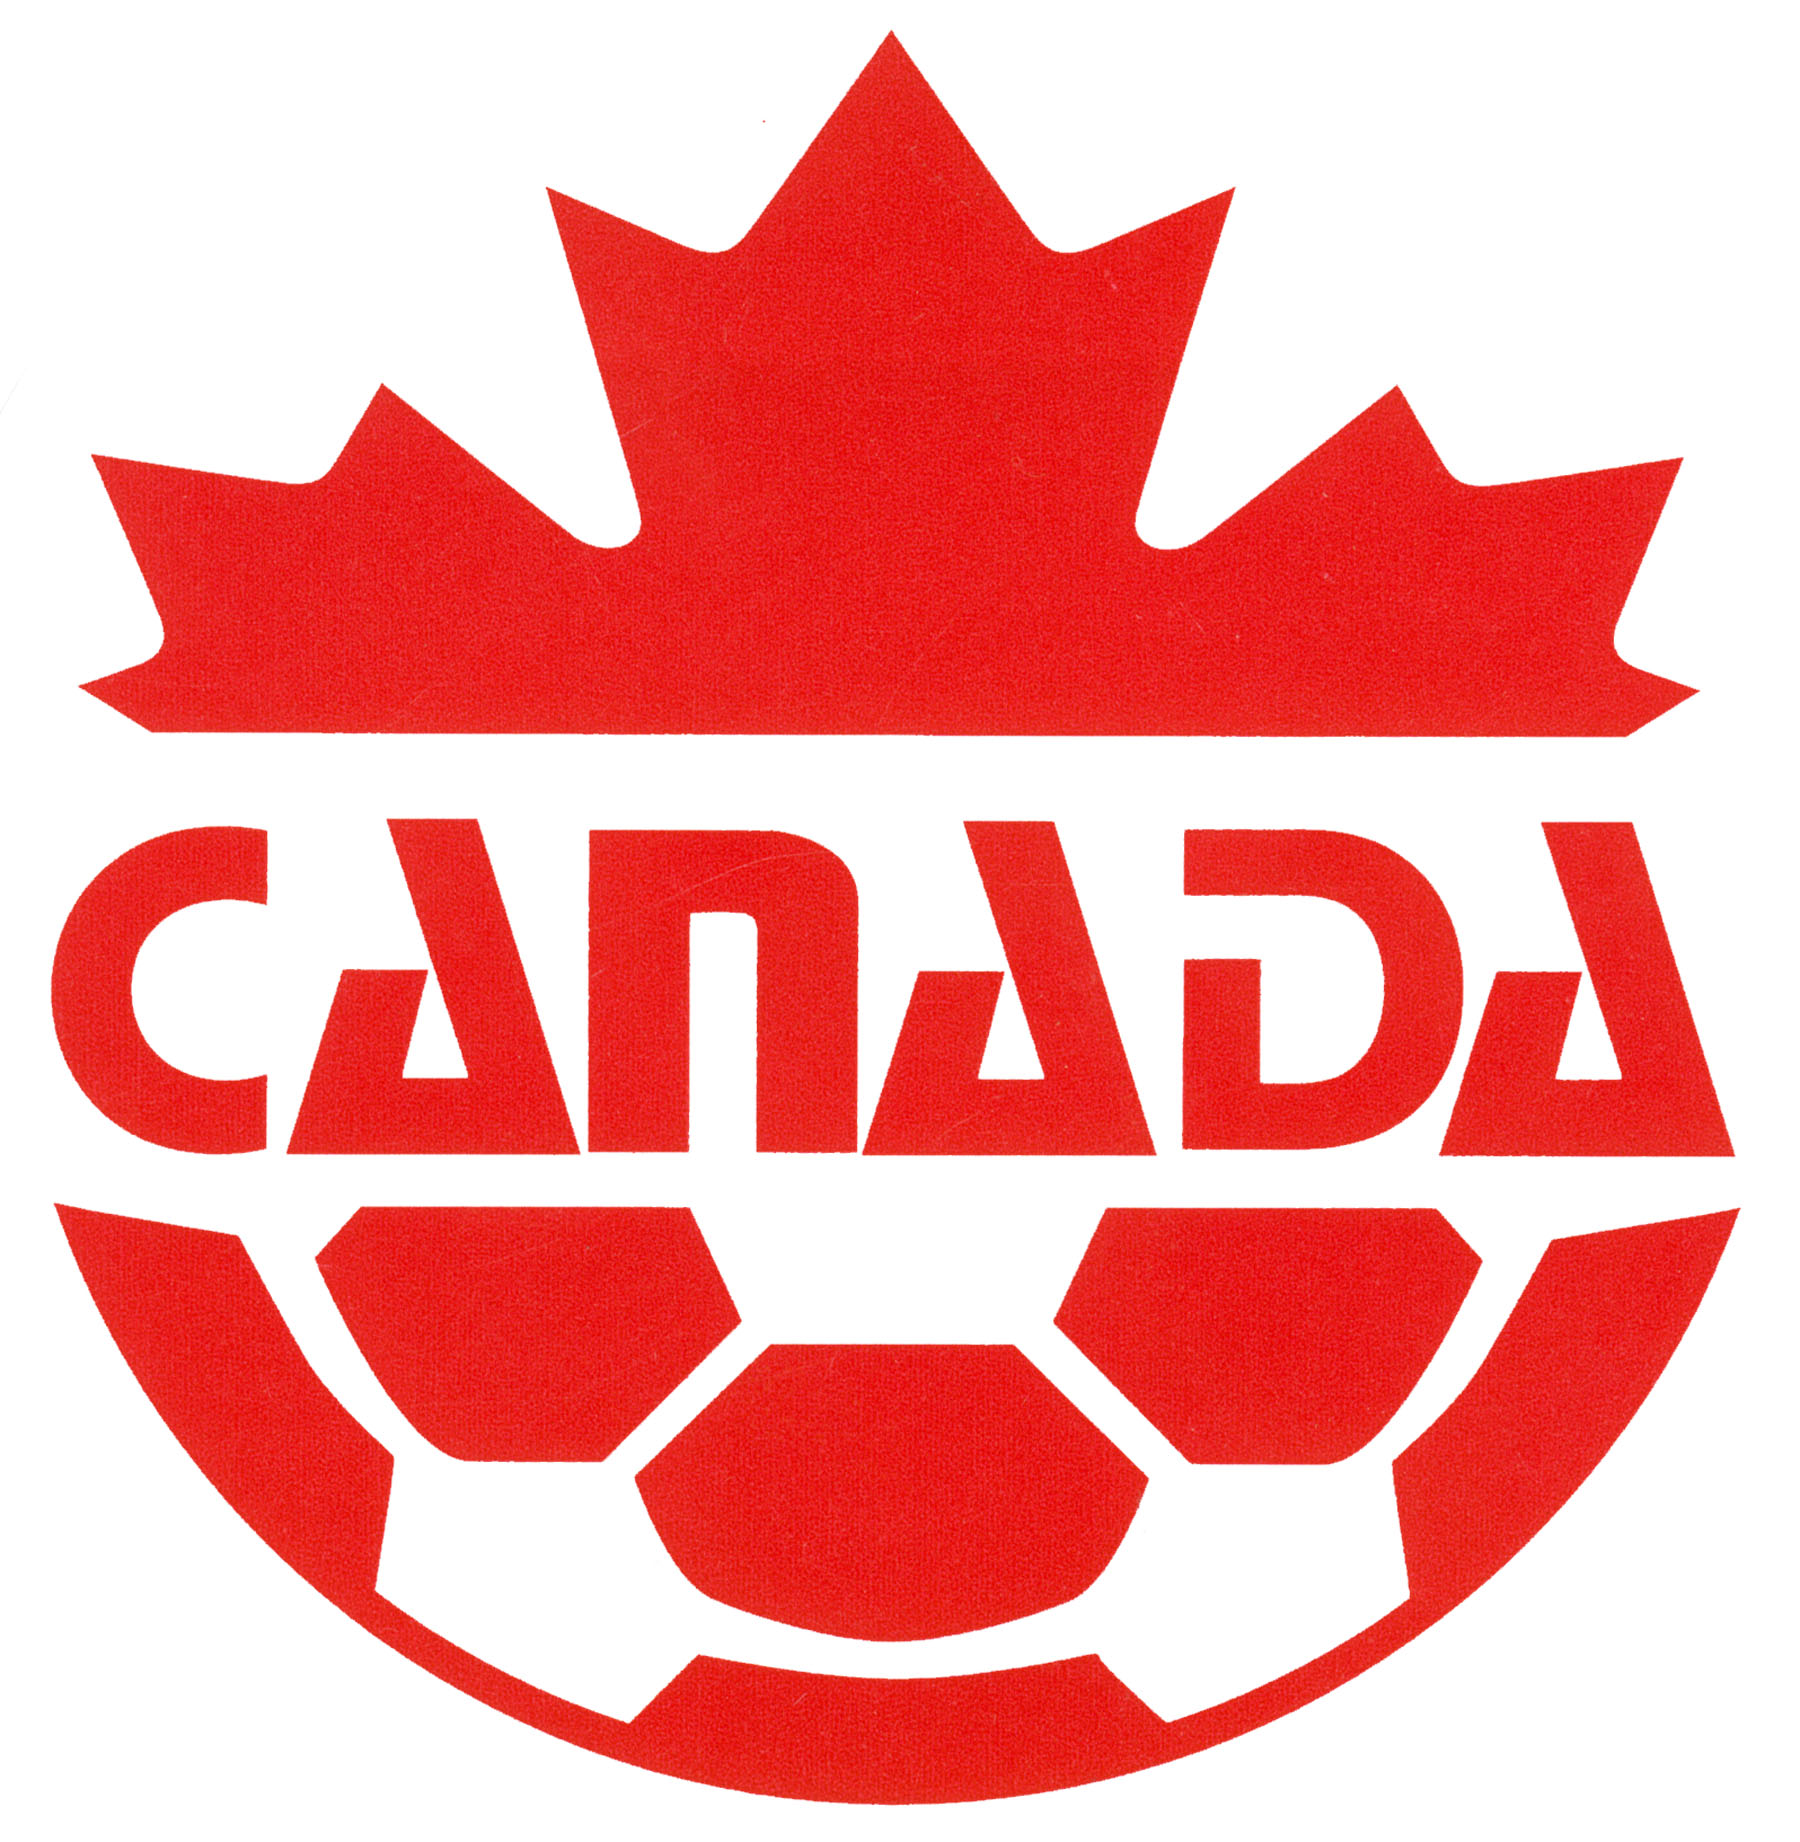 Meilleur buteur de la Ligue canadien de soccer (1987-1992)